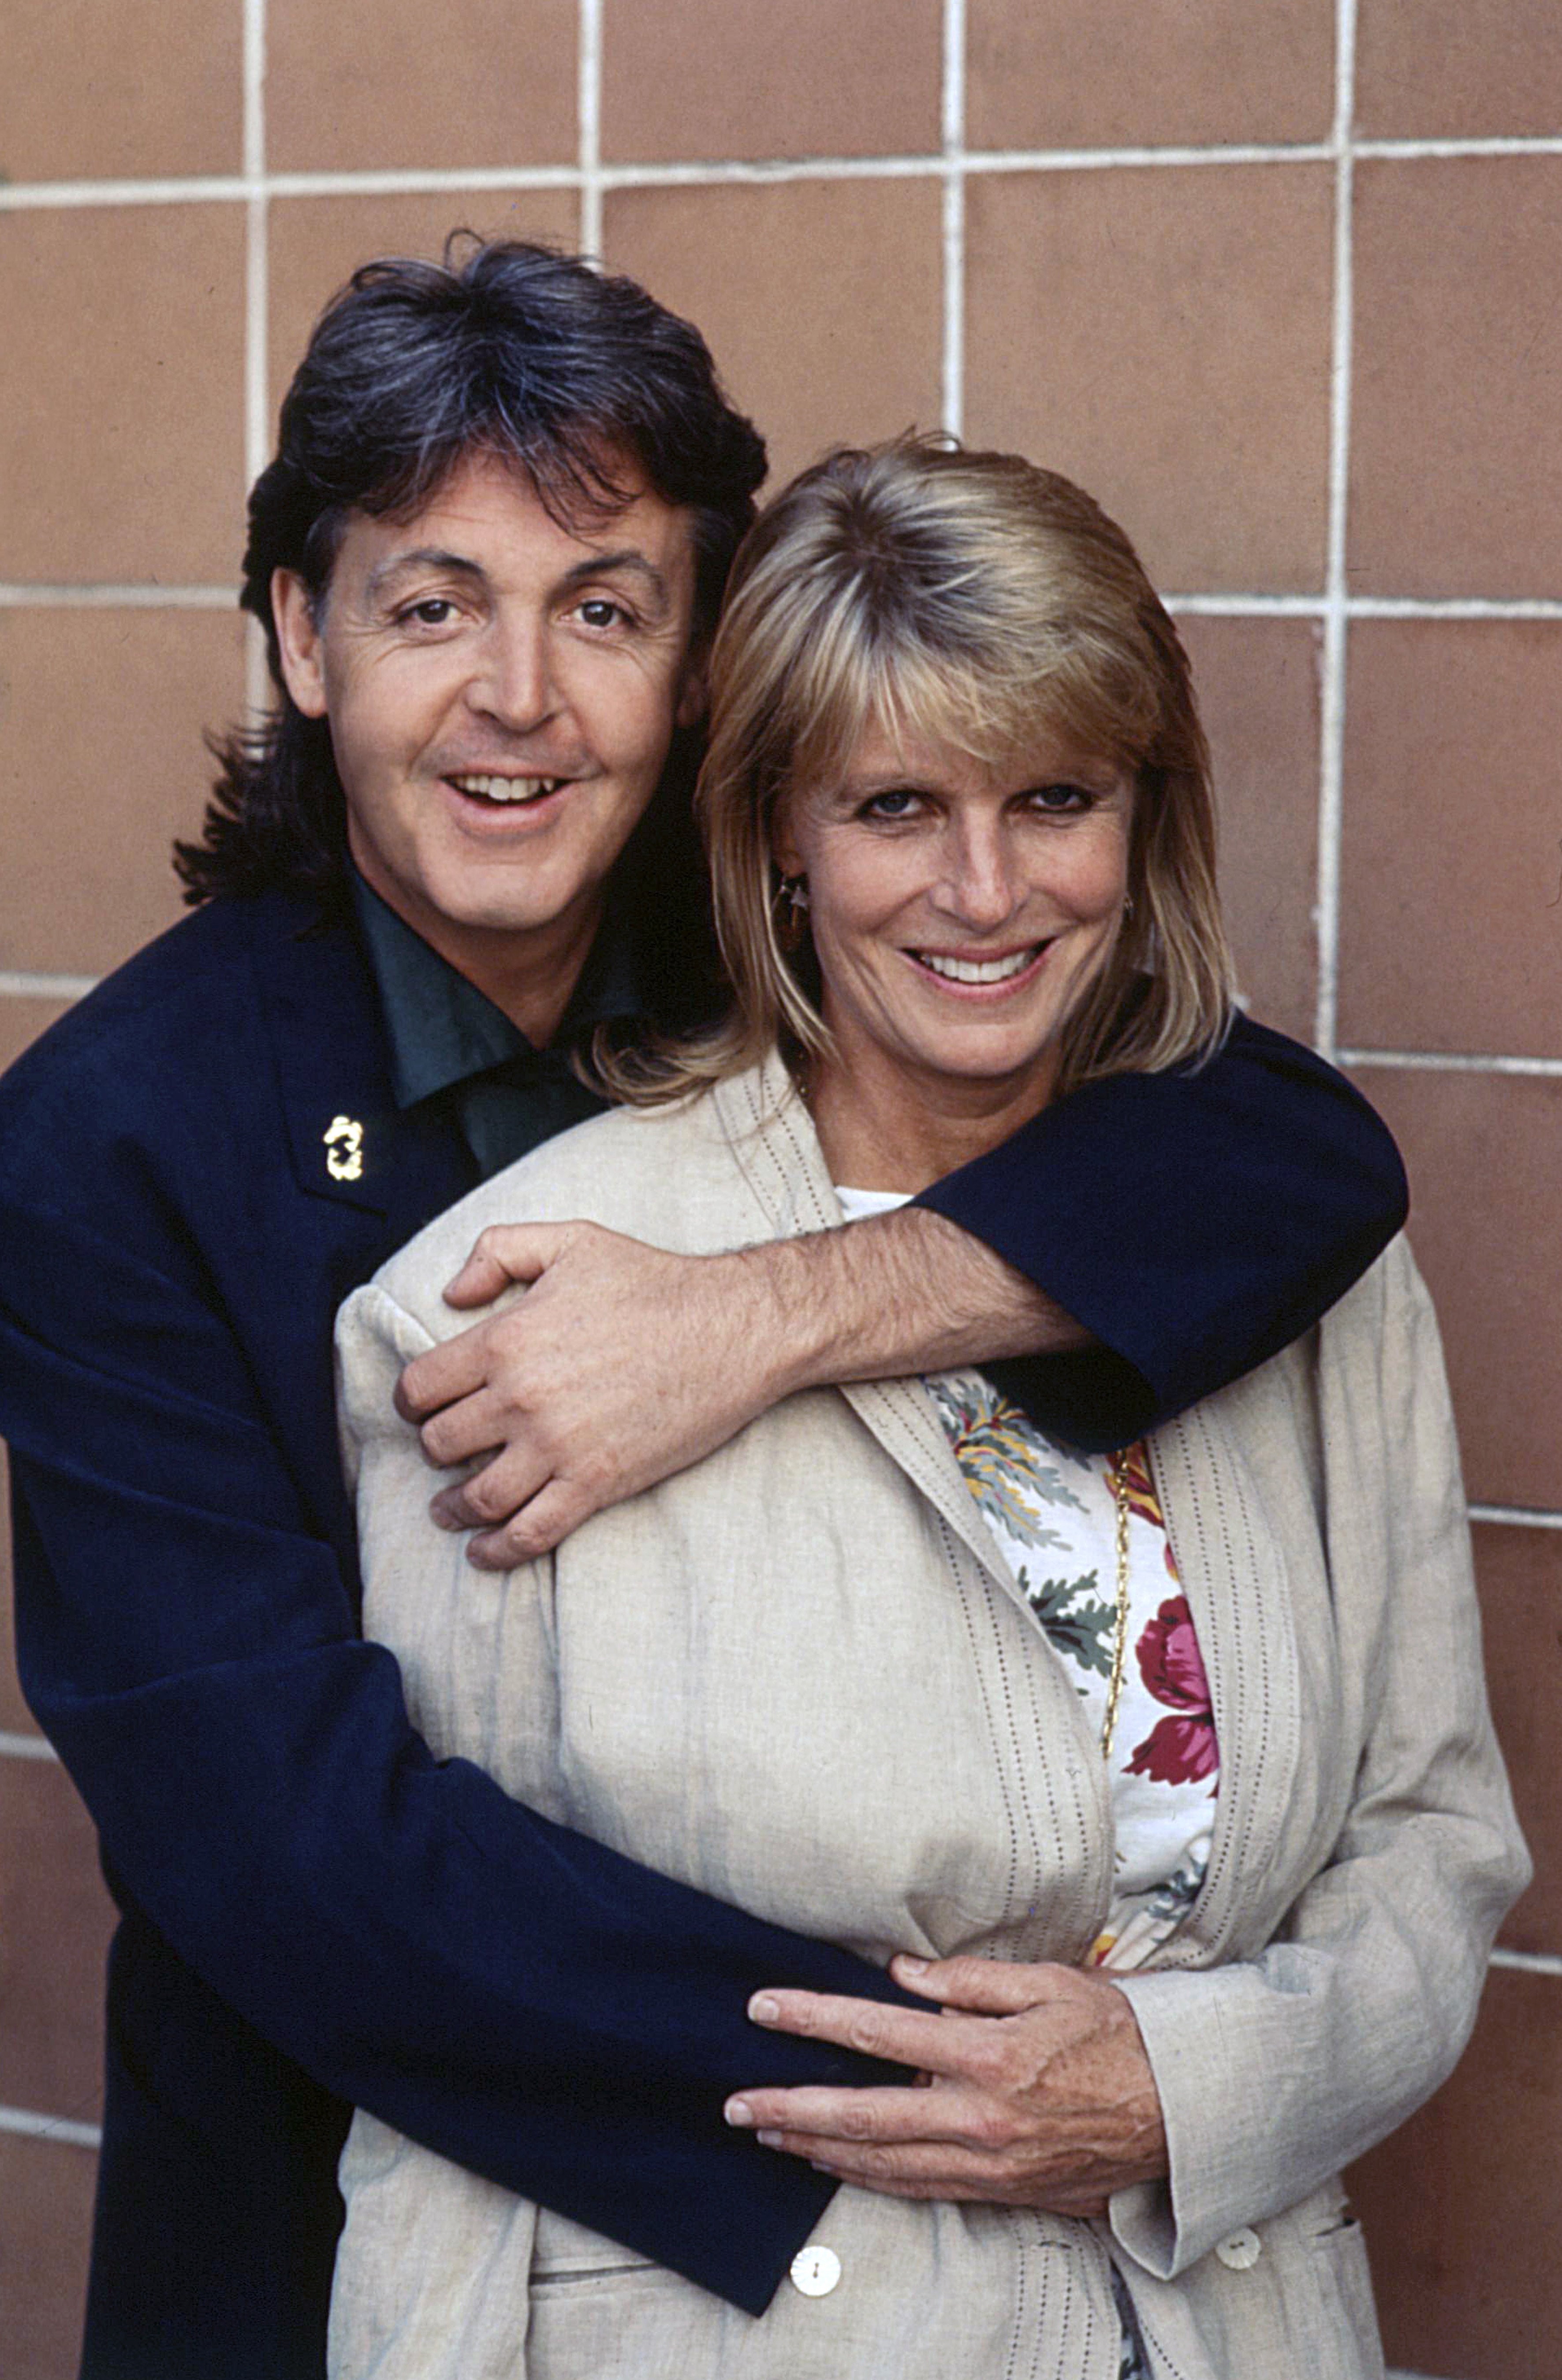 El cantautor y músico británico Paul McCartney abrazando a su esposa Linda Eastman, en 1989. | Foto: Getty Images